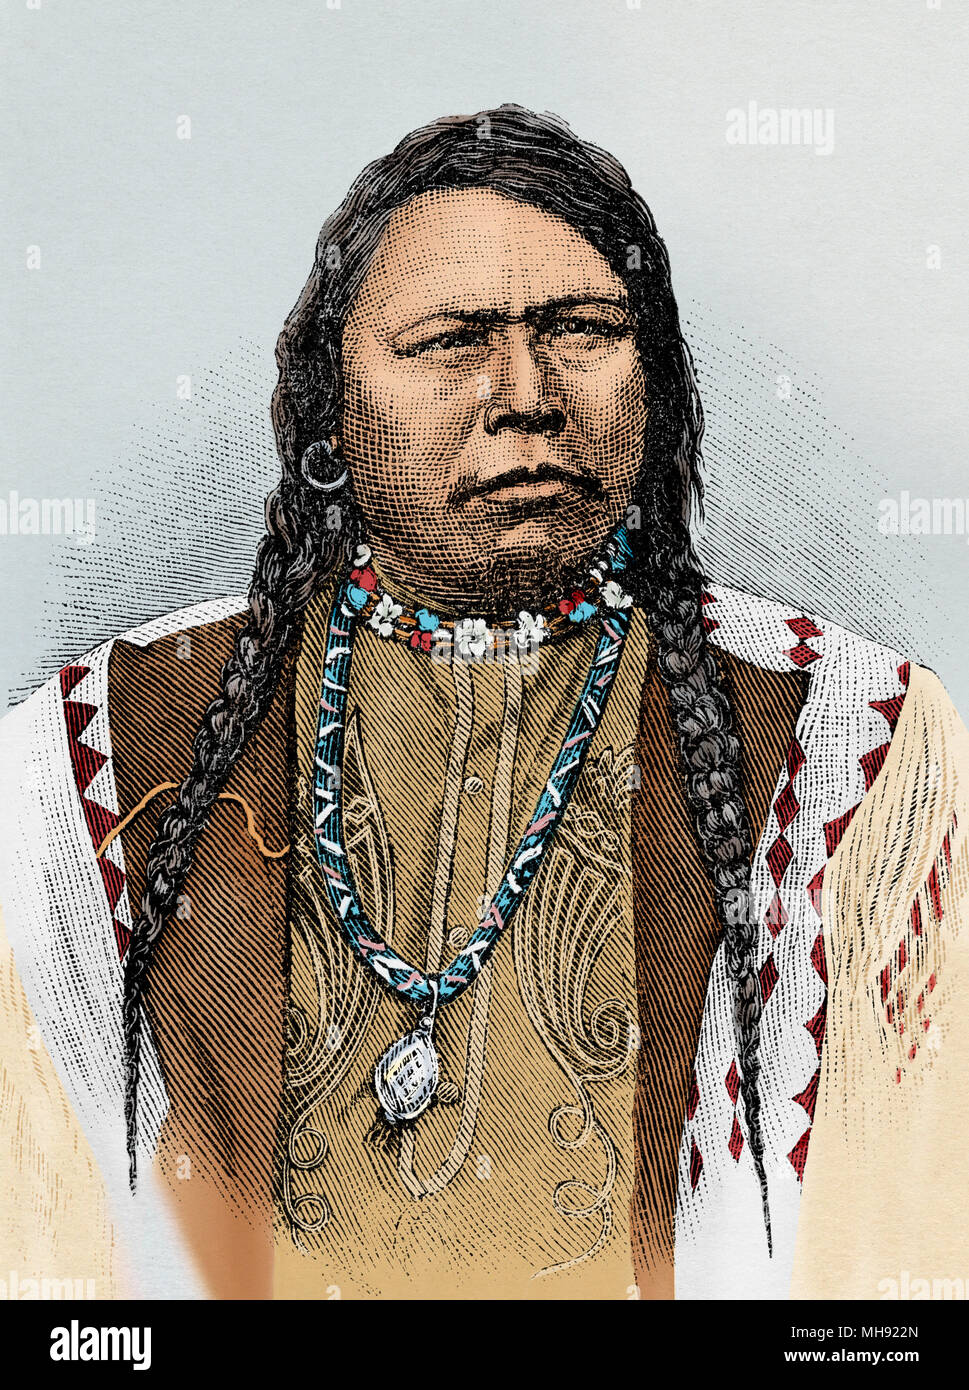 Ute chief Ouray che ha soppresso la sollevazione contro i bianchi nel 1879. Digitalmente la xilografia colorata Foto Stock